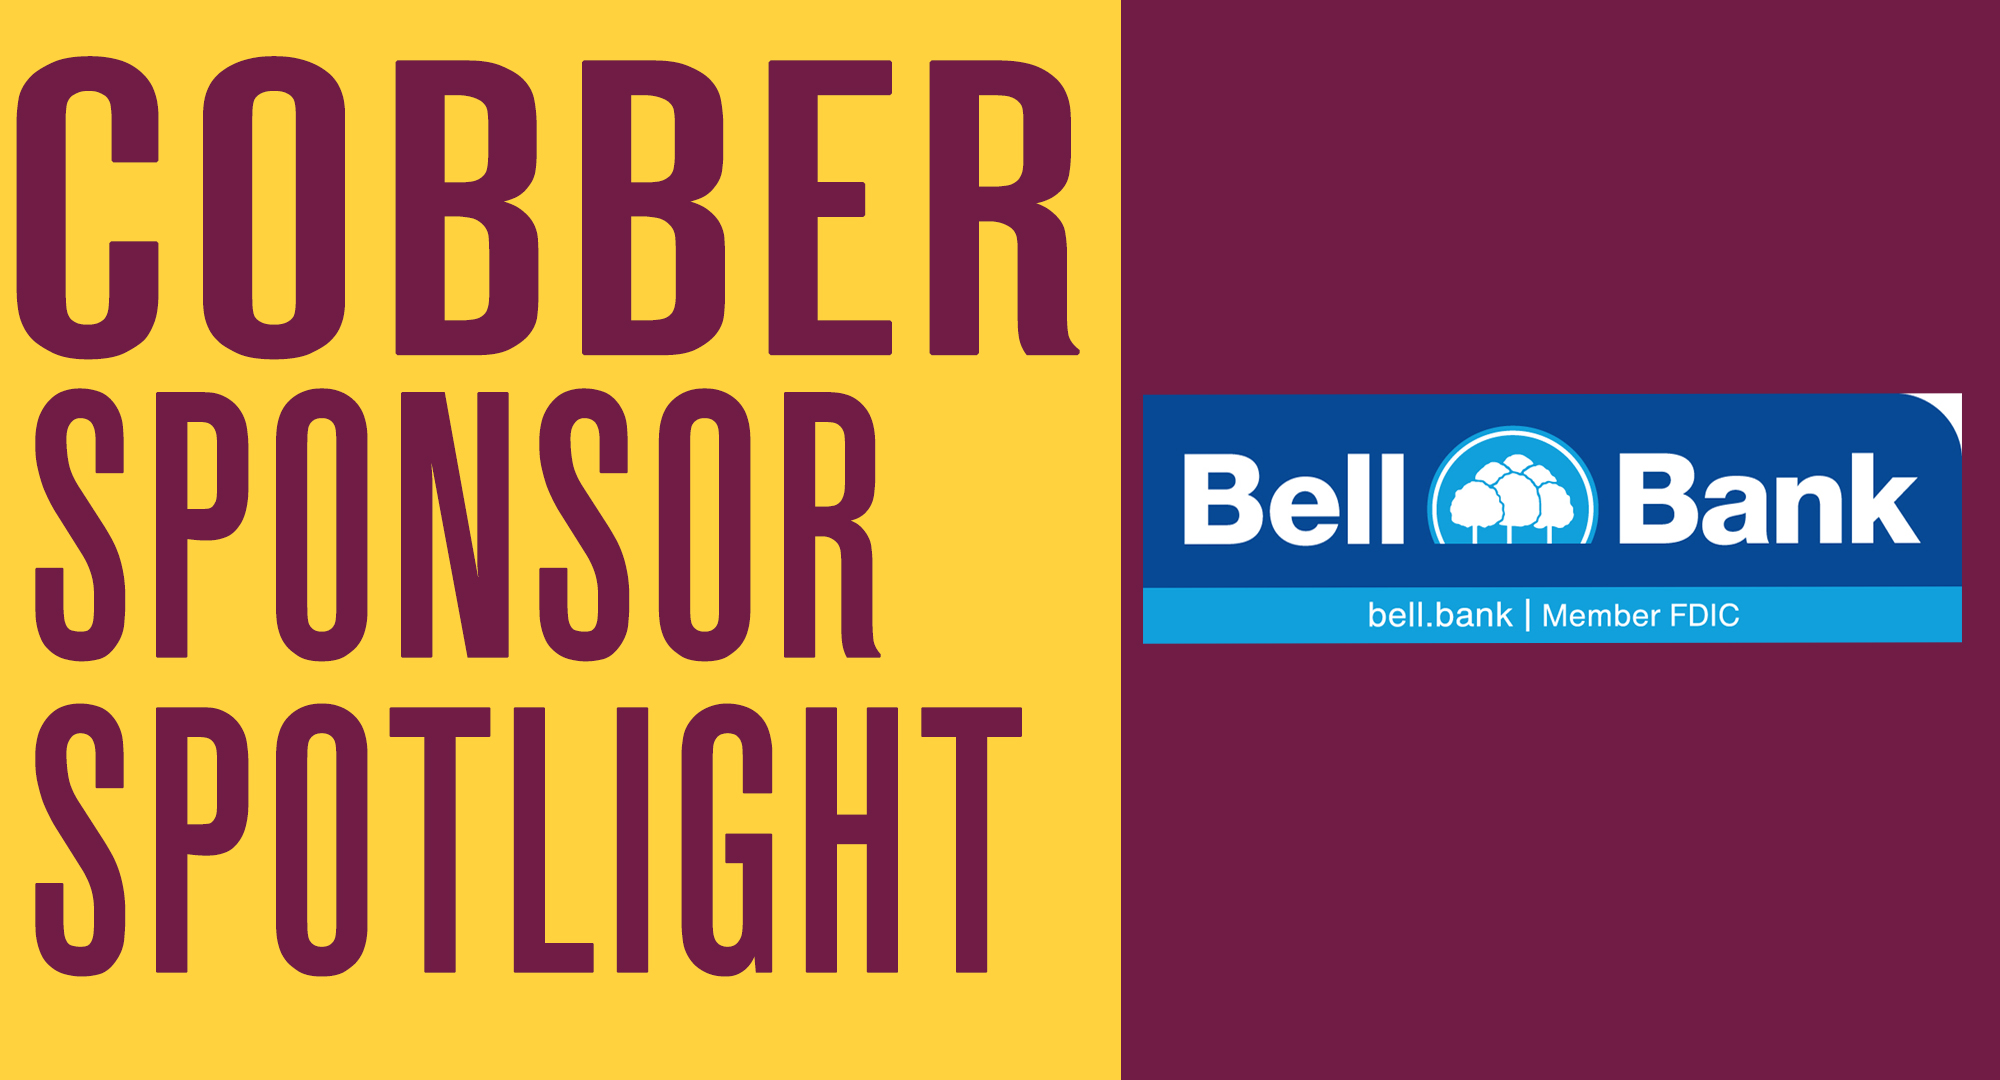 Cobber Sponsor Spotlight - Bell Bank